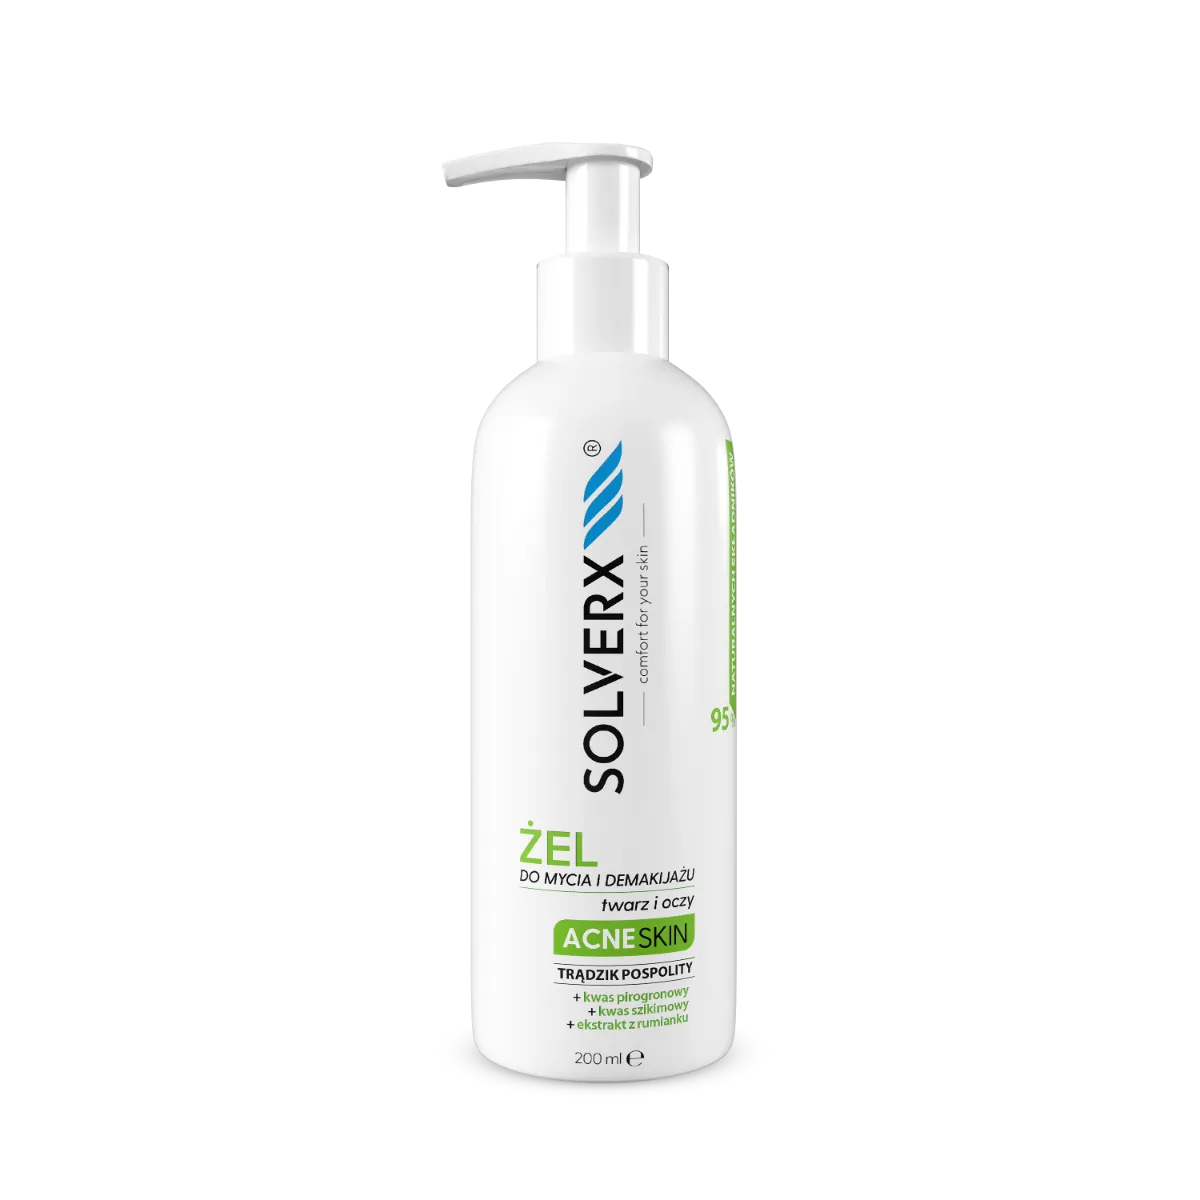 Solverx Acne Skin żel do mycia i demakijażu twarzy i oczu, 200 ml